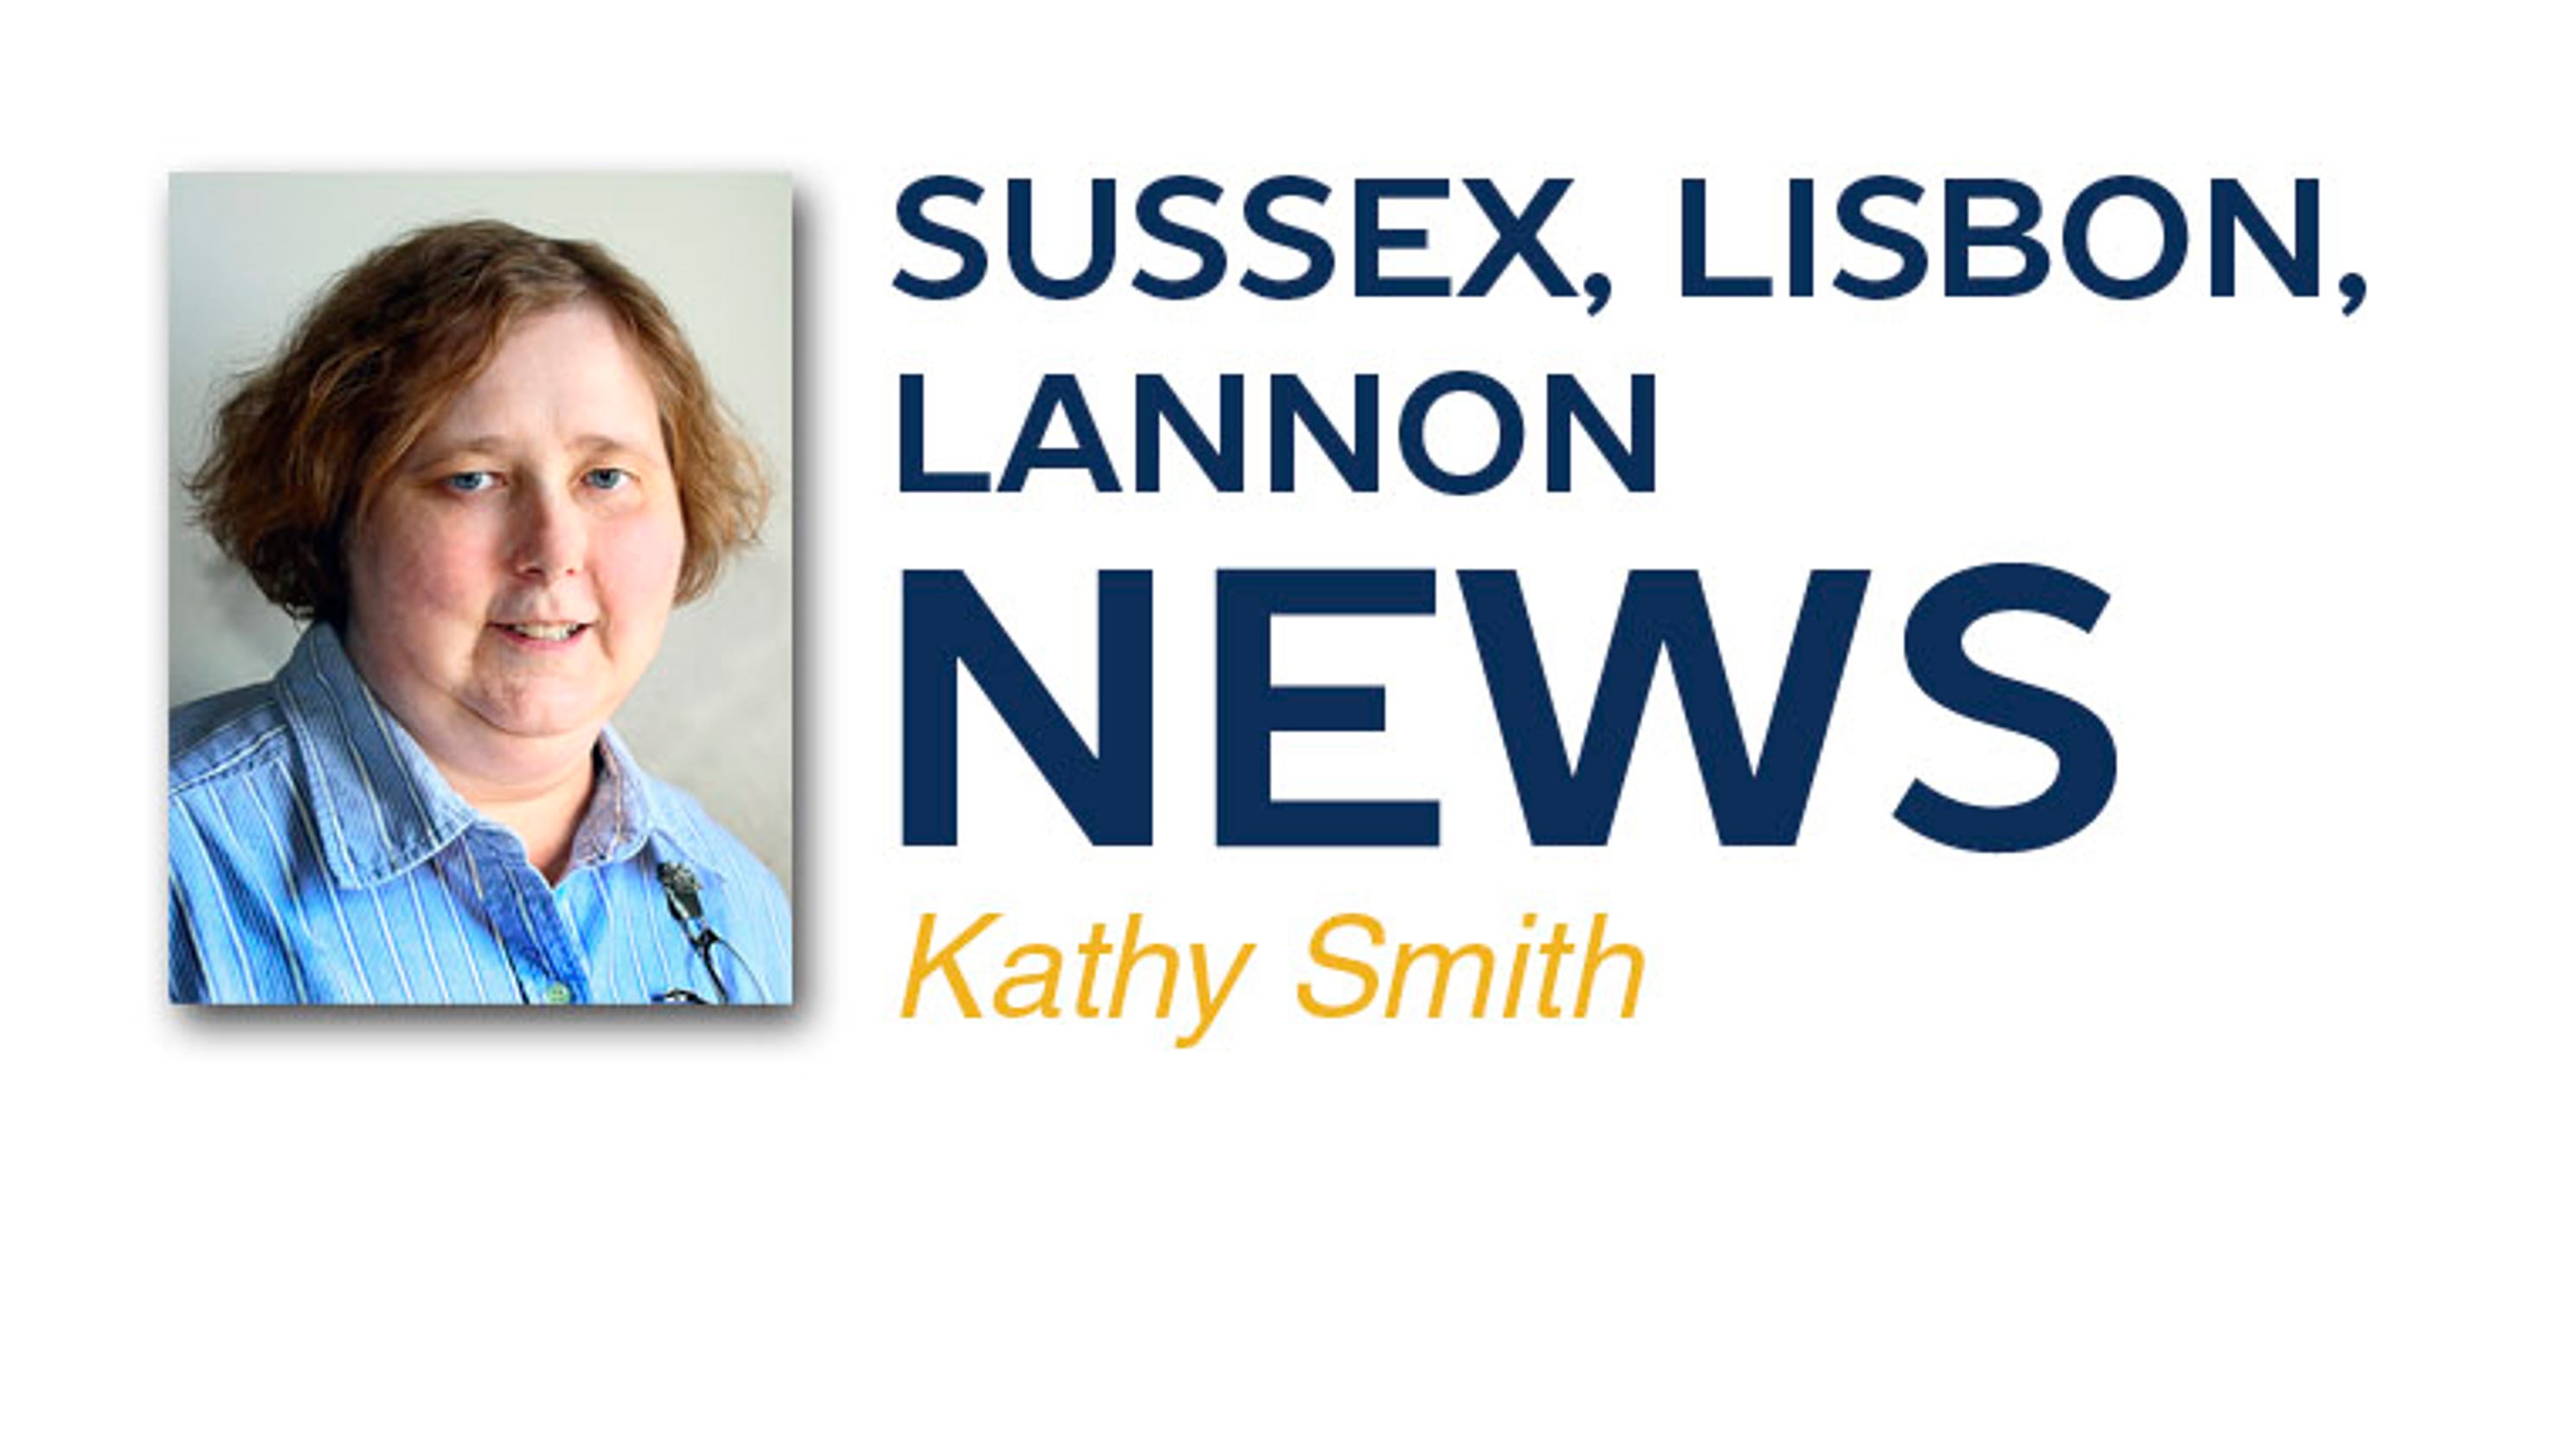 Sussex-Lisbon-Lannon Area News: June 15, 2017 - Northwest Now